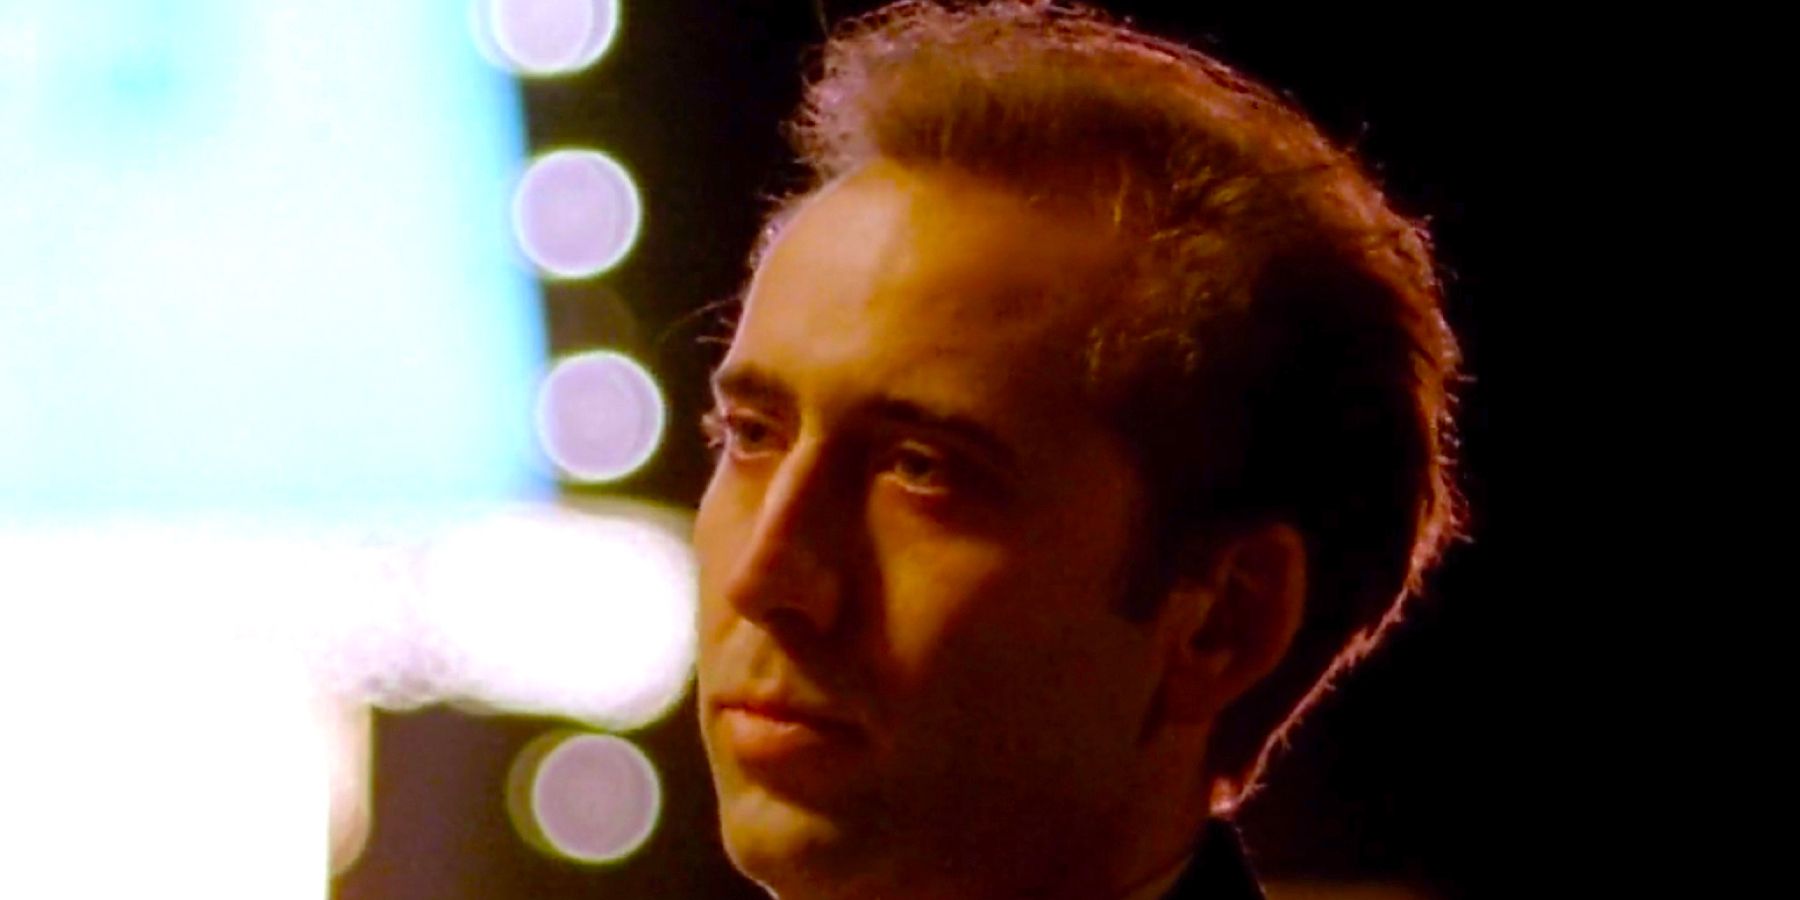 “Experimento cinematográfico de alto riesgo”: Nicolas Cage recuerda la dolorosa experiencia del rodaje de la escena de su única película ganadora del Oscar